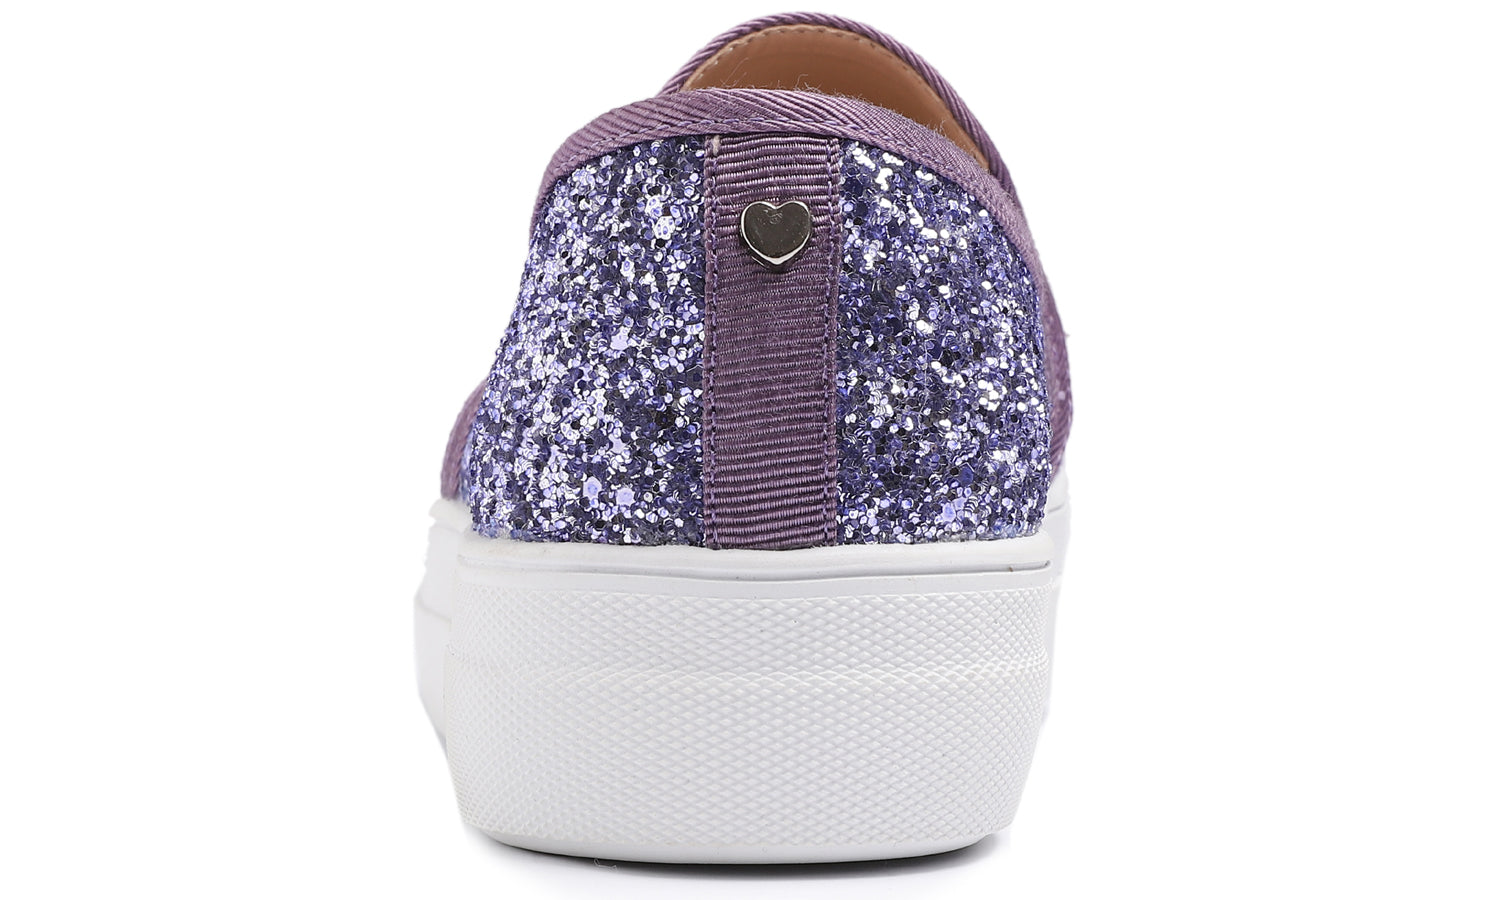 Feversole Women's Glitter Lavender Platform Slip On Sneaker Casual Flat Loafers